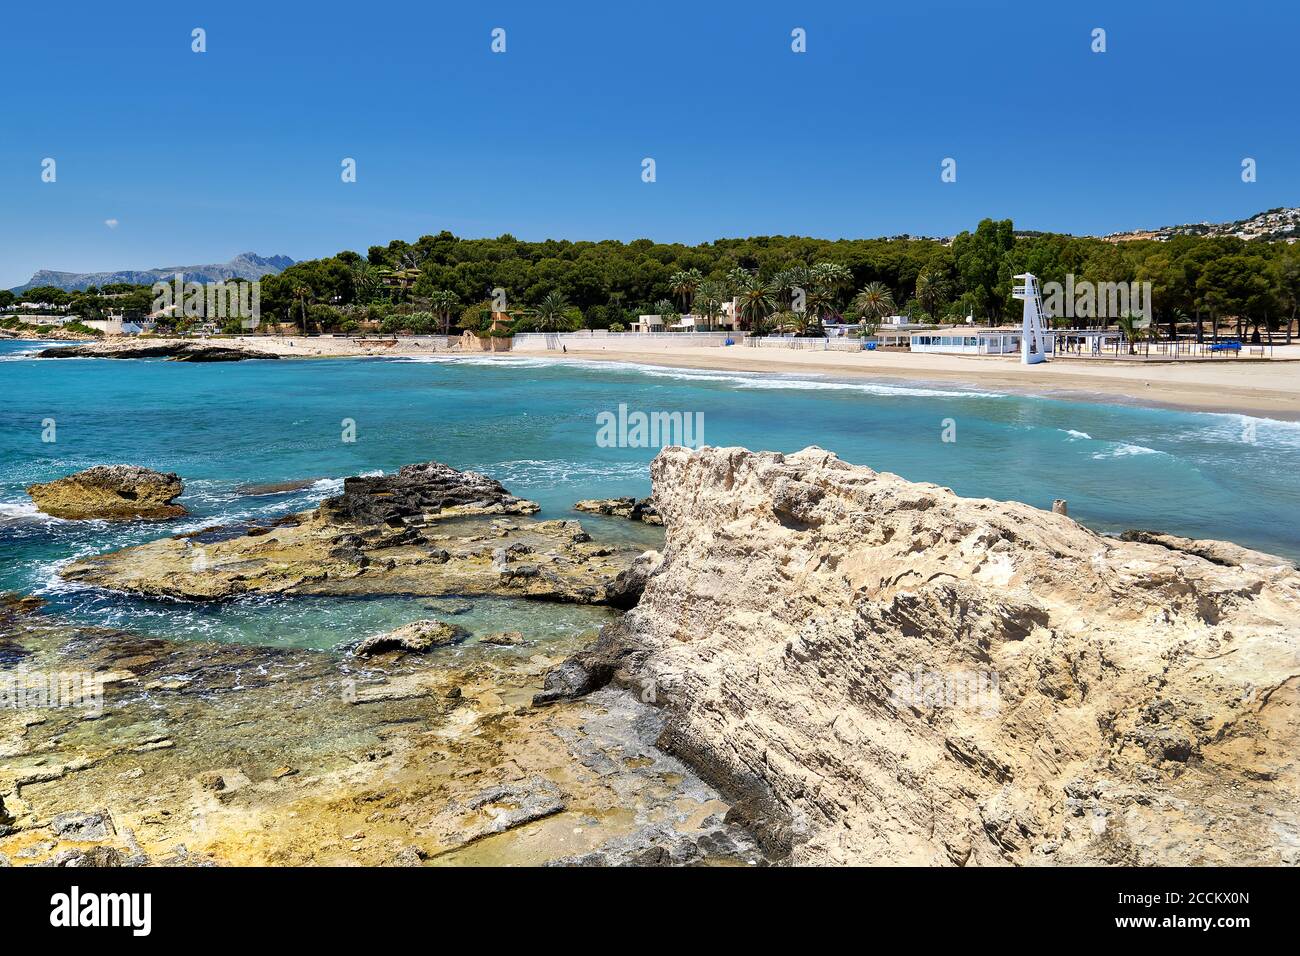 Spiaggia di Moraira durante la soleggiata giornata estiva, città costiera spagnola. Spagna Foto Stock